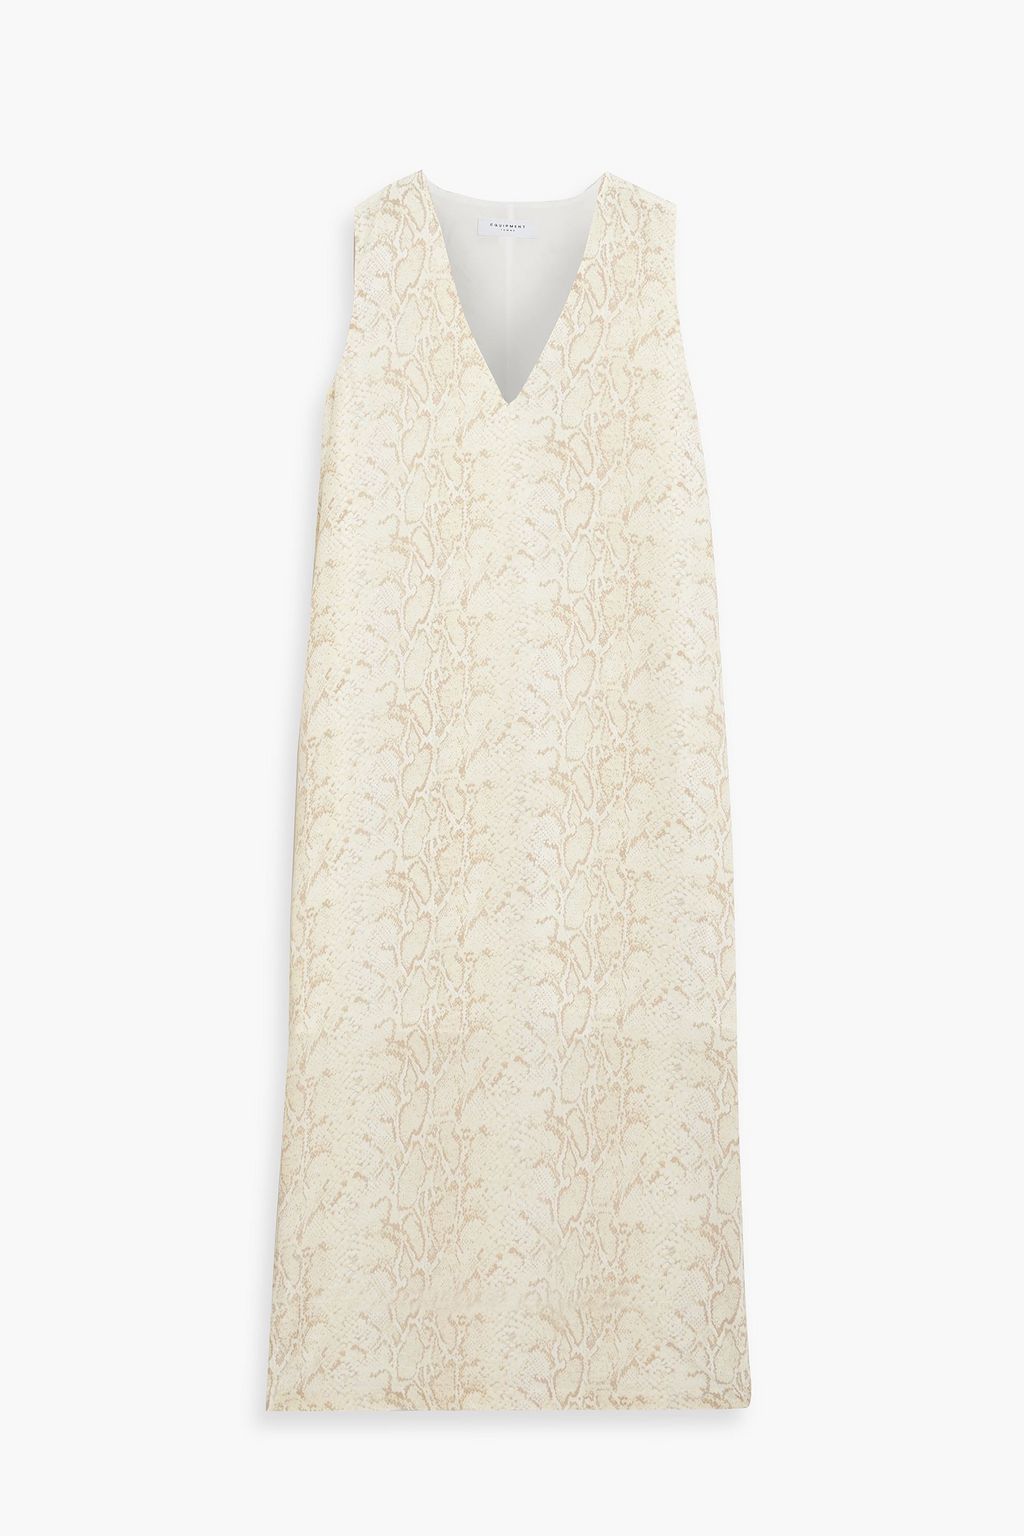 Платье миди Connery со змеиным принтом EQUIPMENT, кремовый